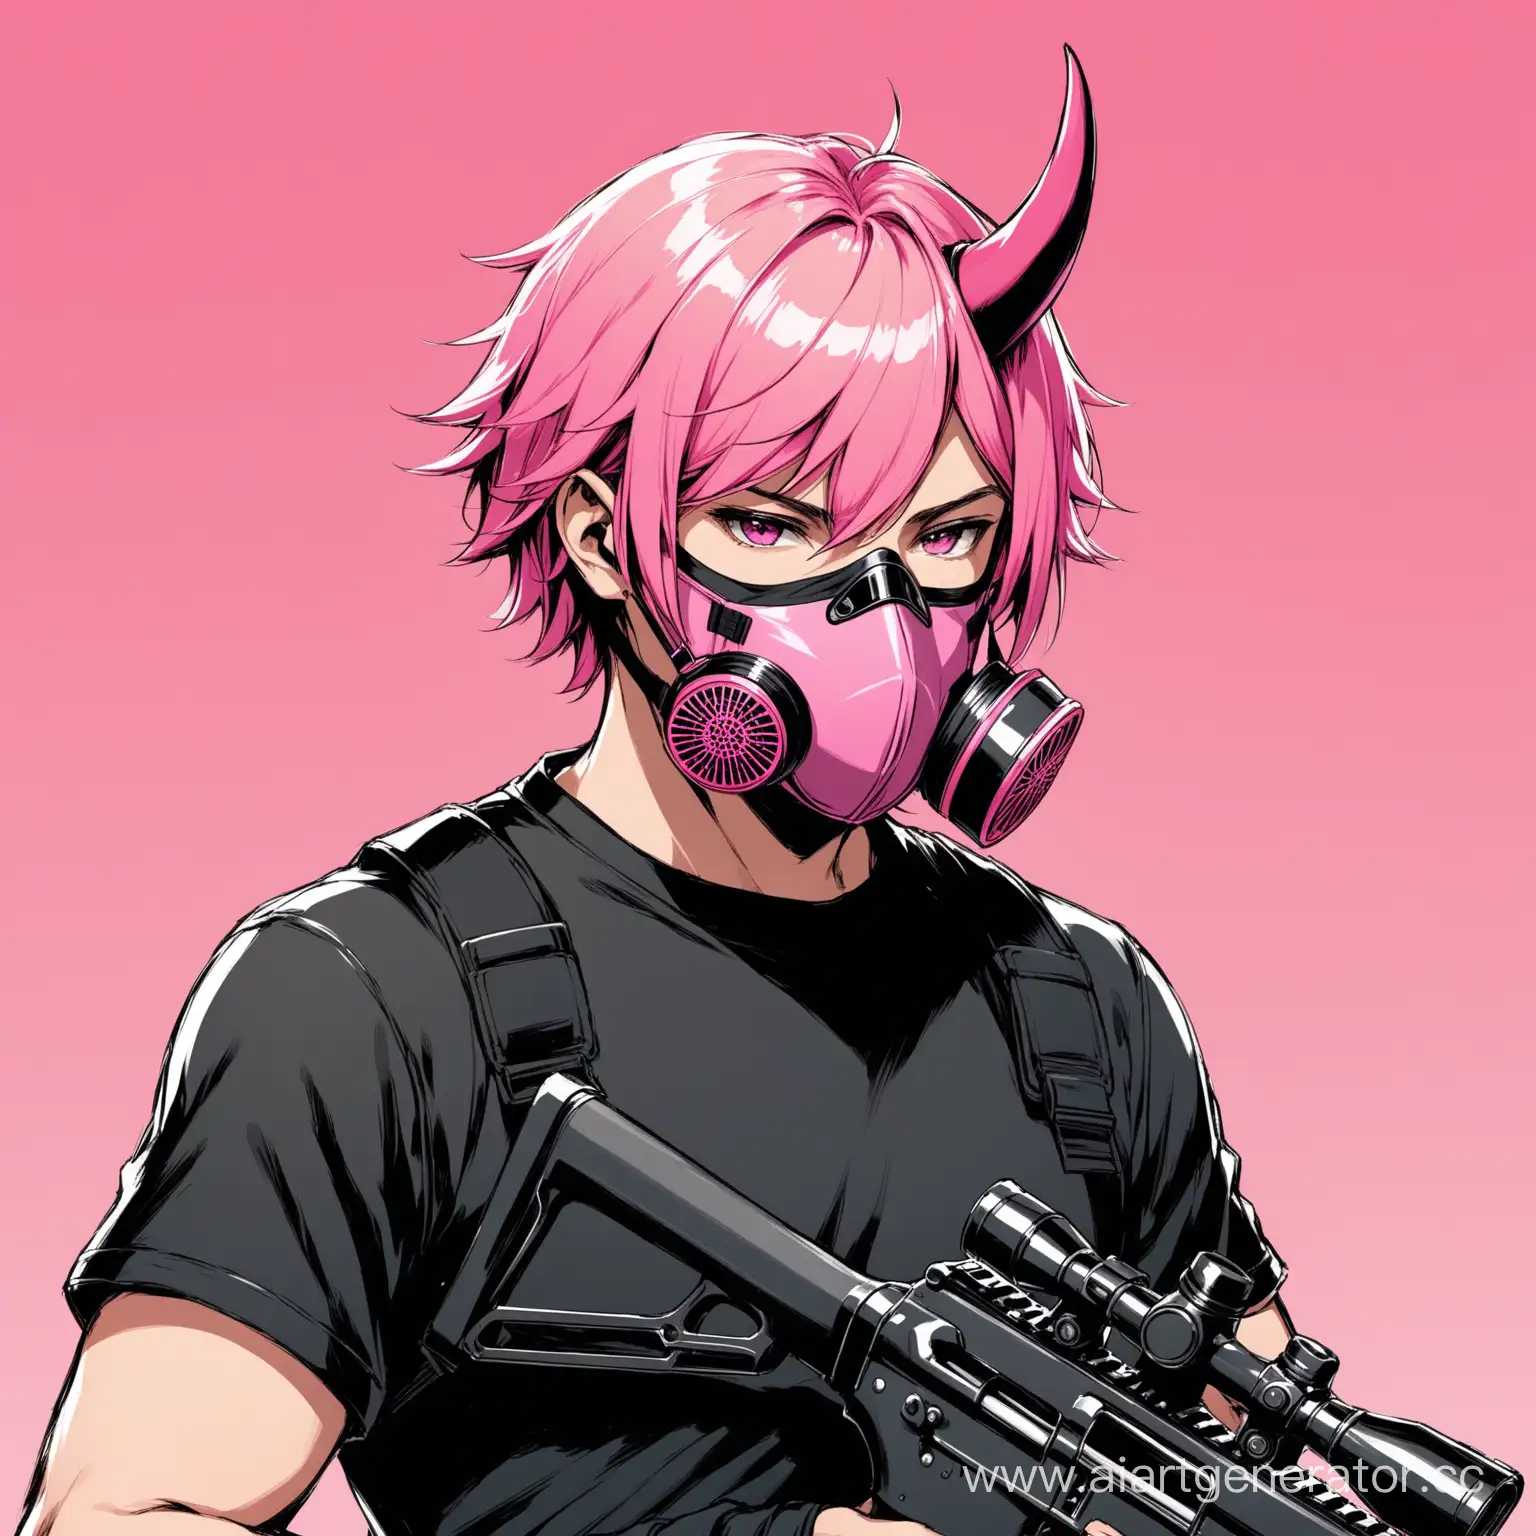 Друтальный молодой мужчина с розовыми волосами и не большими розовыми рогами смотрящими прямо на лице розовая маска роспиратор в черной футболки и винтовка в руках